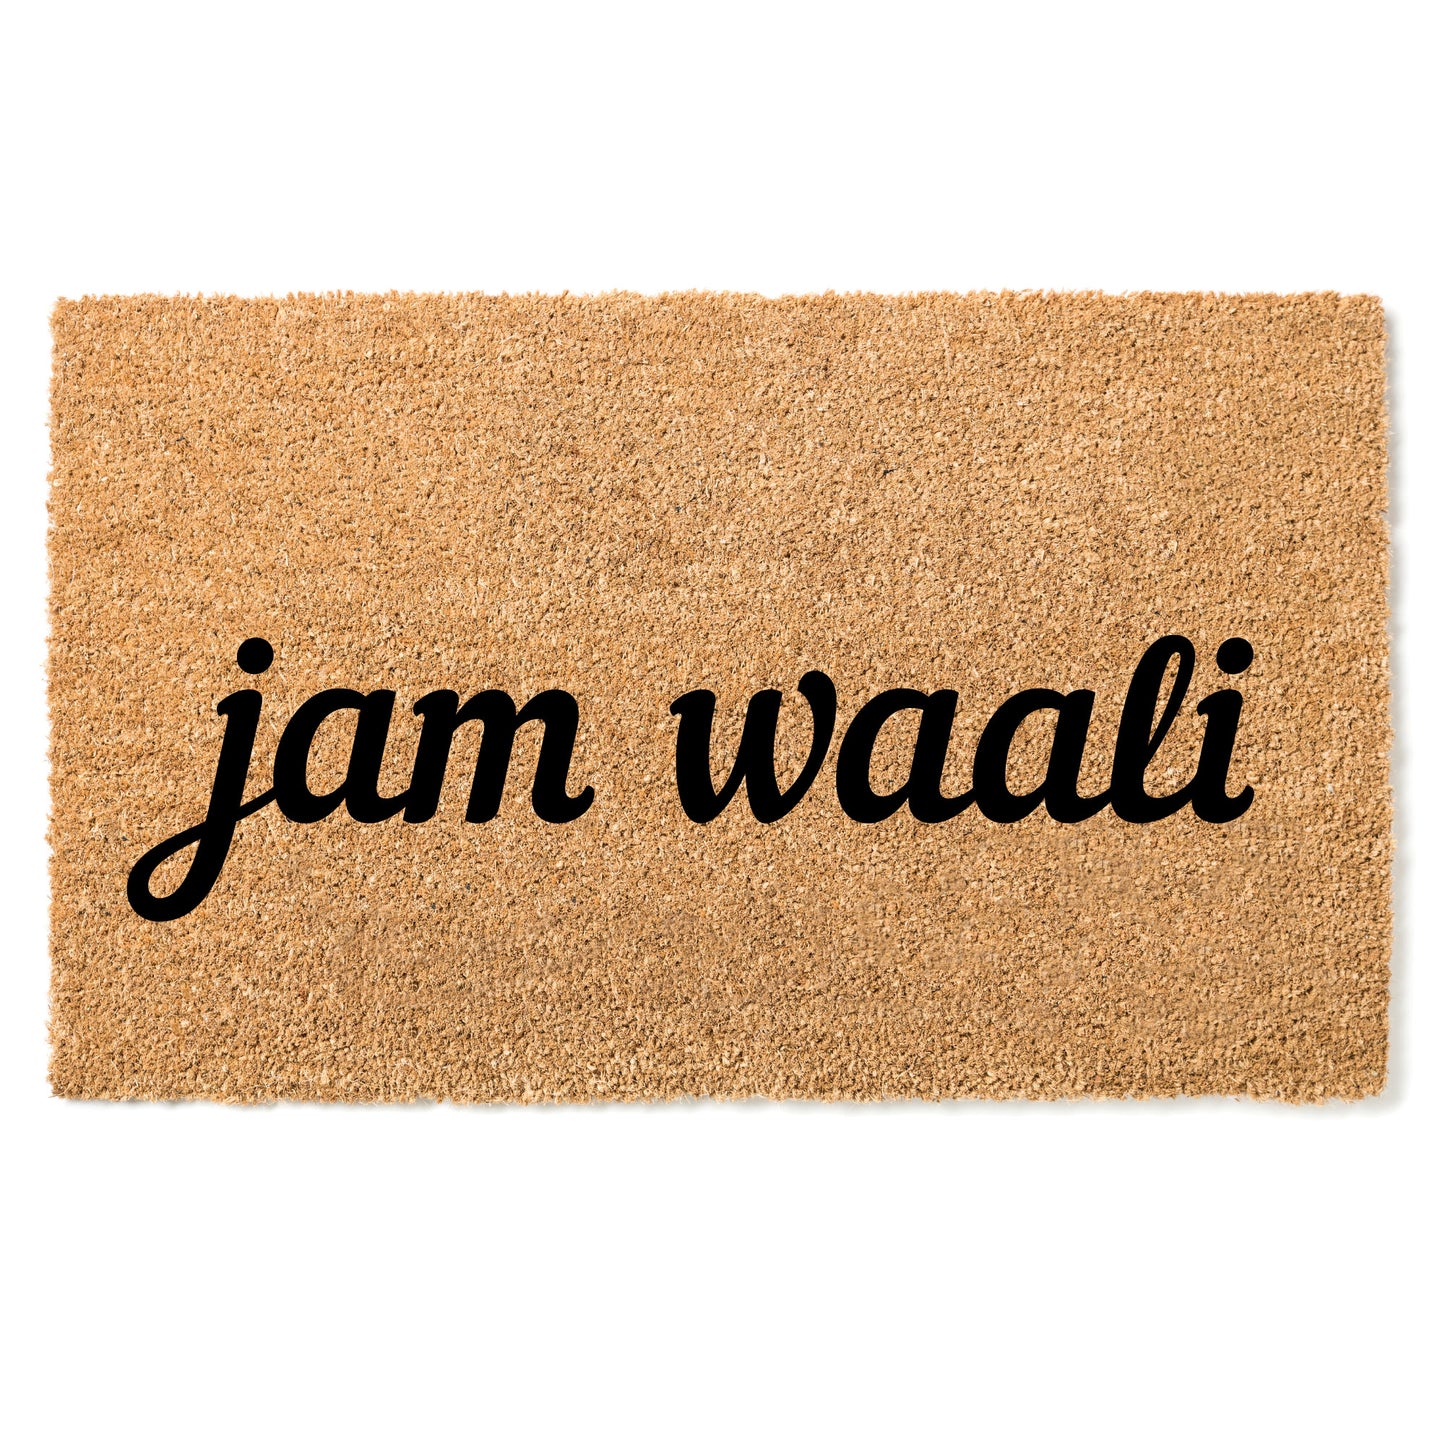 Paillasson Jam waali - "Bonjour" en Pulaar (Peul, Fulani, Fulfulde)